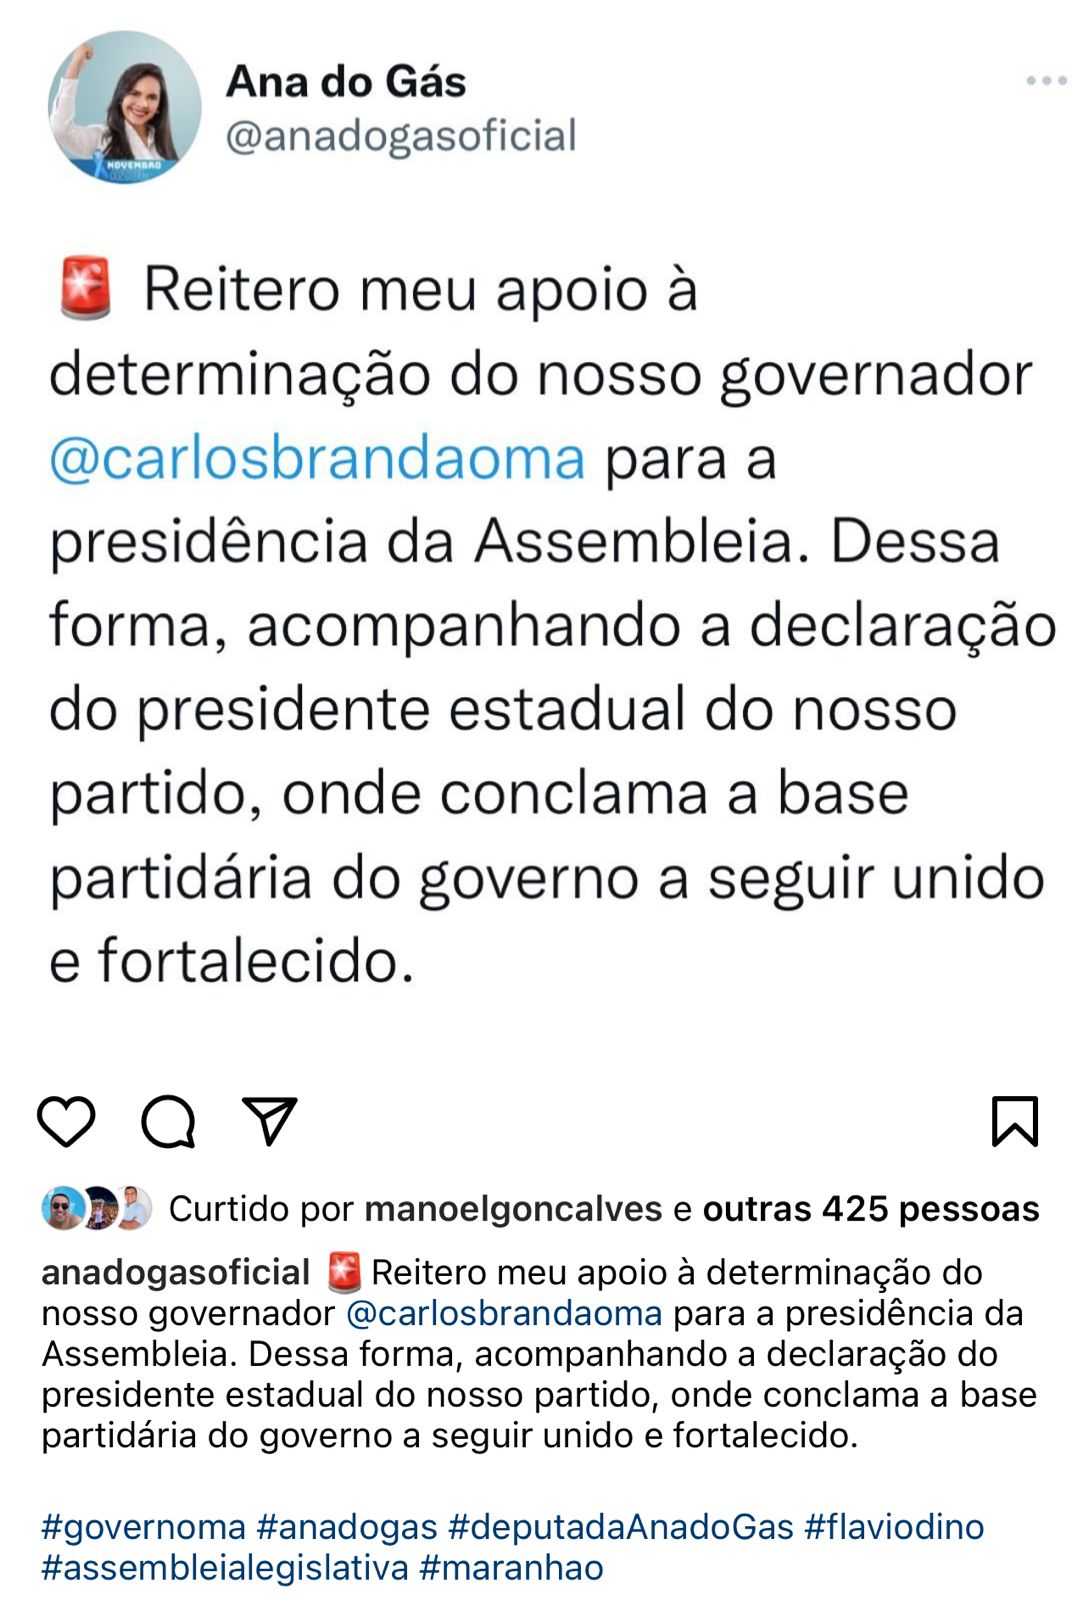 Publicação possuía a hashtag com o nome da deputada Iracema, candidata de Brandão, mas foi excluído.